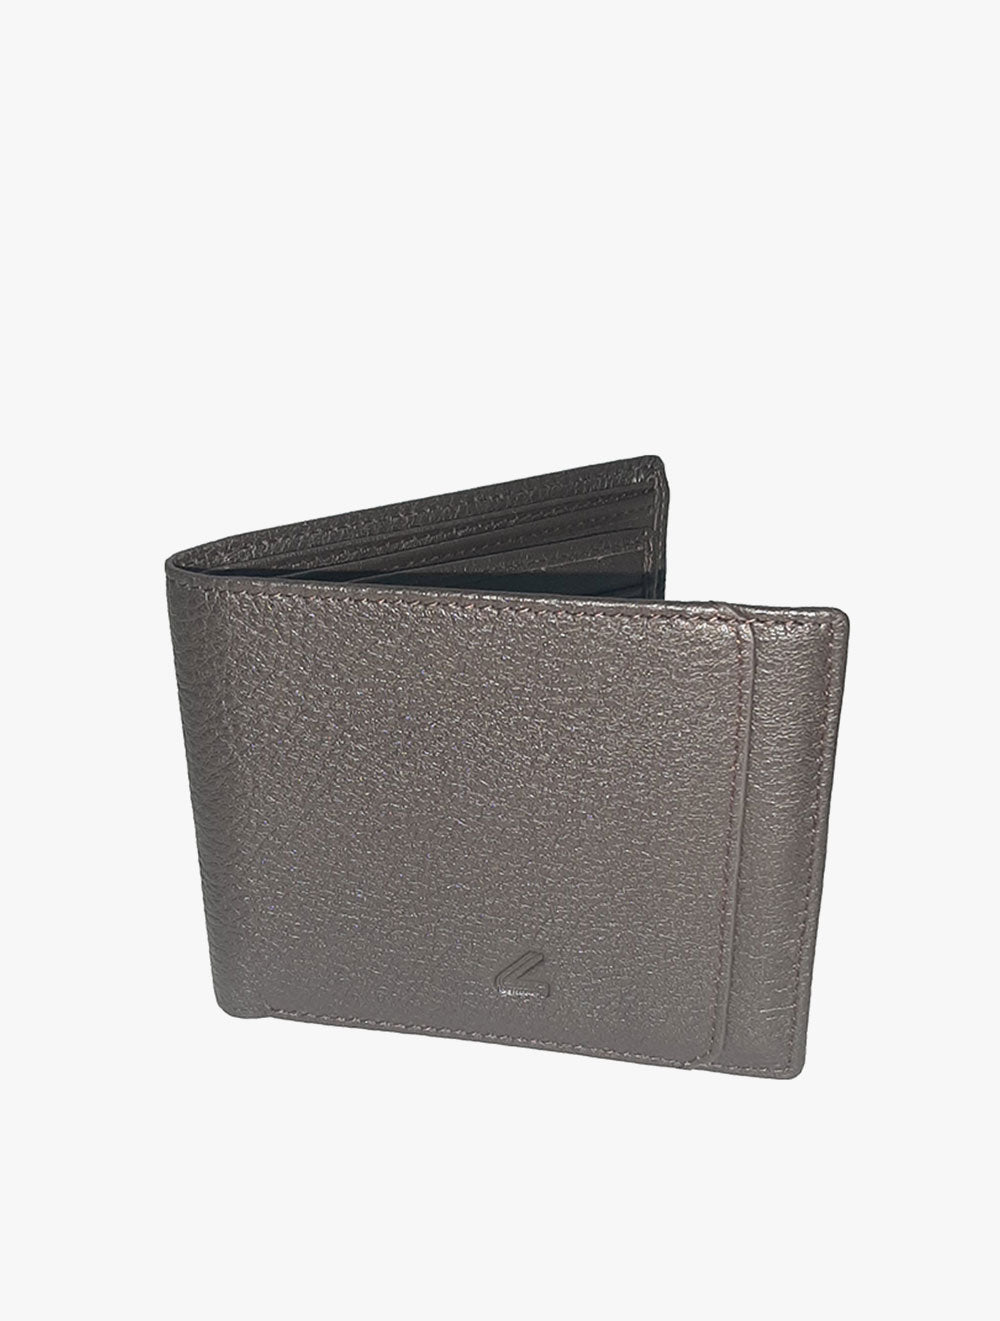 CASERINI
Men'S Wallet - CS252355-16